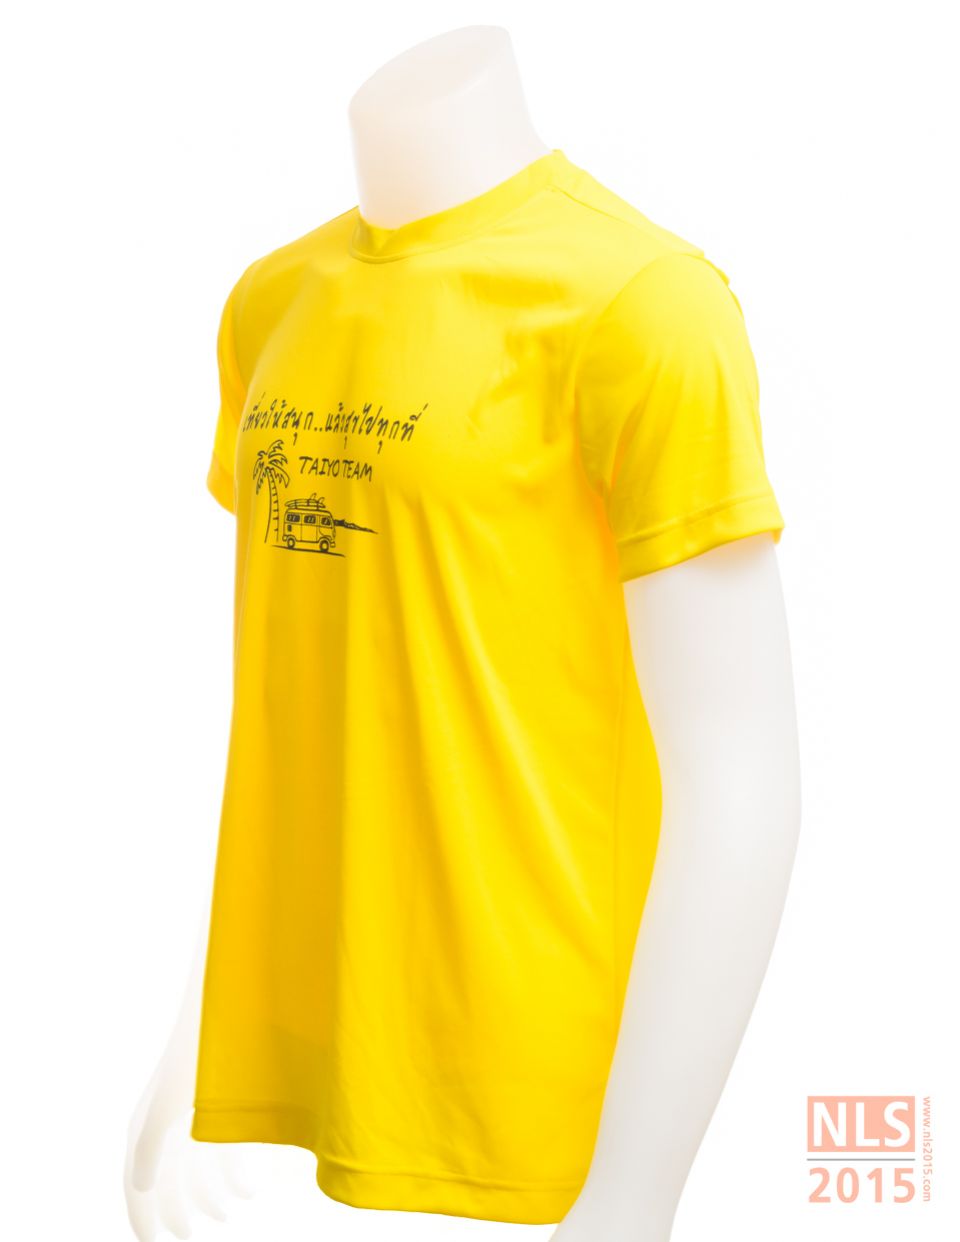 บริษัทนลินสิริ2015 เครือสหพัฒน์ ศรีราชา รับผลิตเสื้อยืดคอกลม พร้อมสกรีนโลโก้ ราคากันเองรูปที่ 